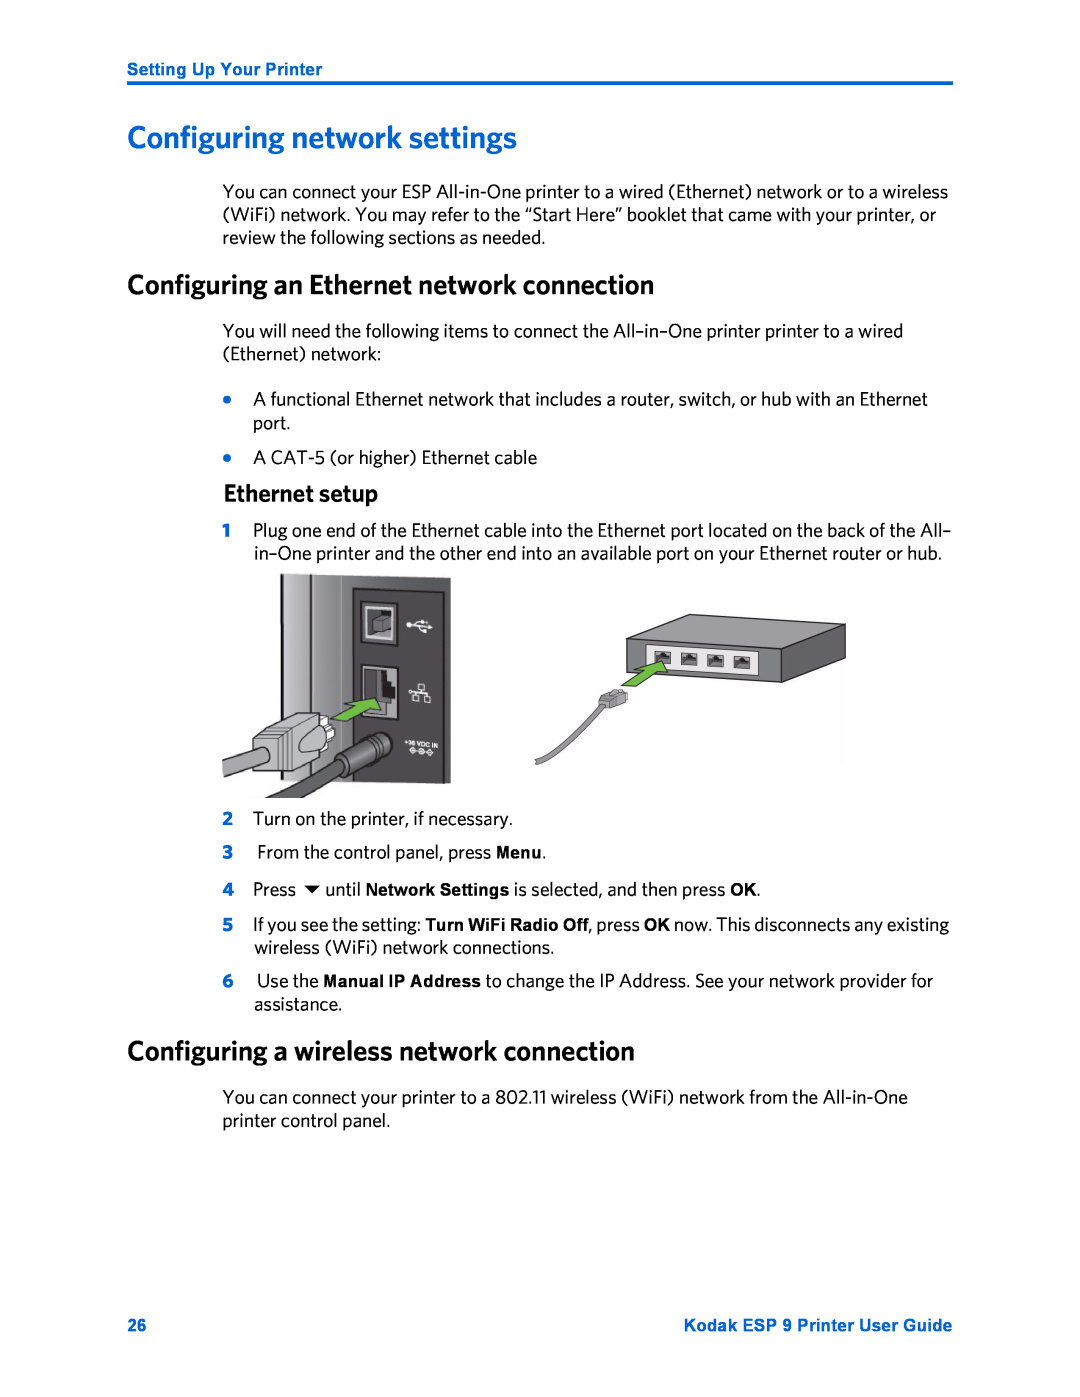 Kodak ESP 9 manual Configuring network settings, Configuring an Ethernet network connection, Ethernet setup 